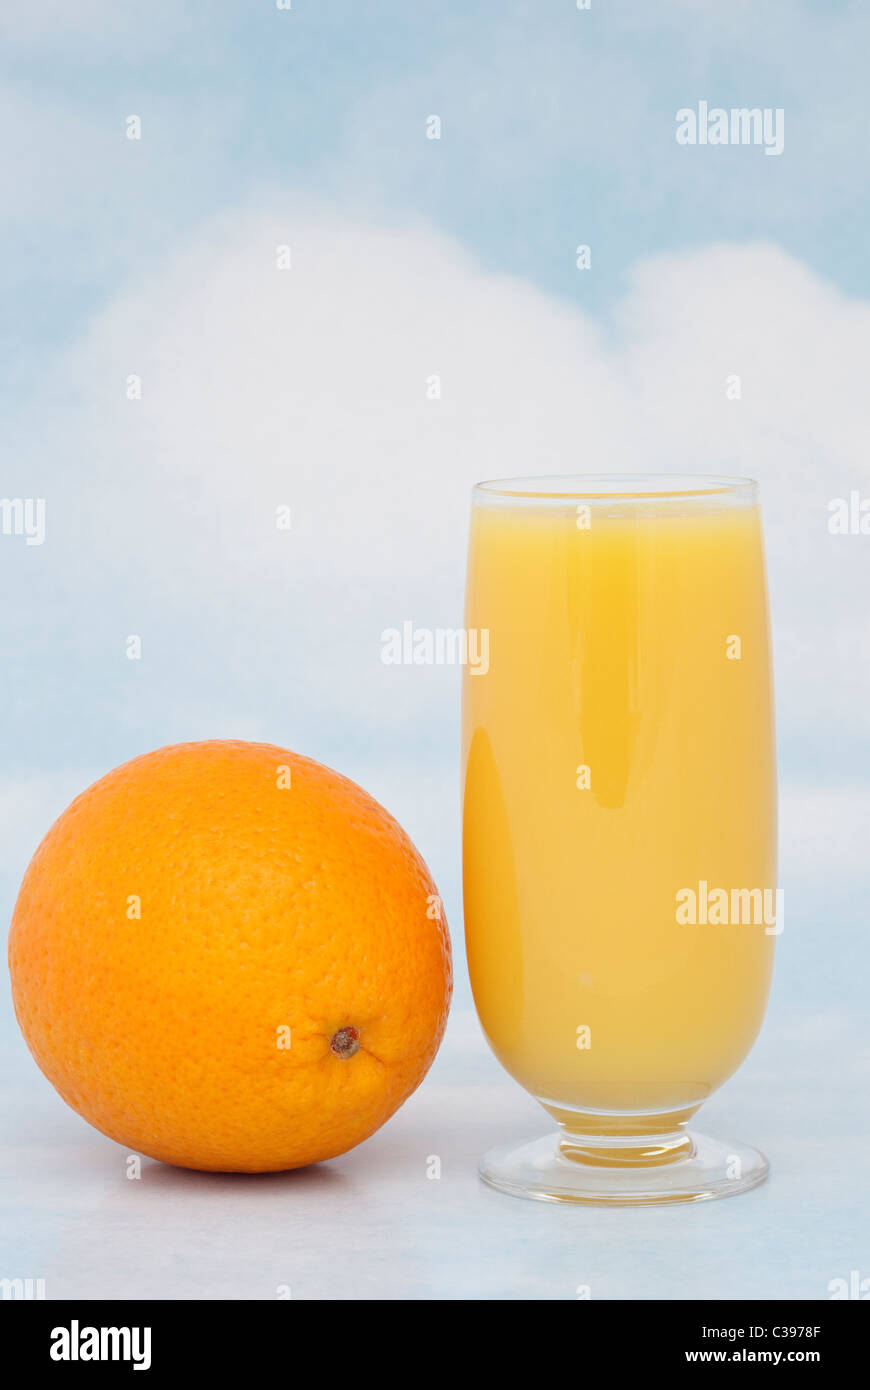 Un bicchiere di succo d'arancia fresco con un tutta arancione contenenti vitamina C contro un cielo blu sullo sfondo. Inghilterra Regno Unito Gran Bretagna Foto Stock